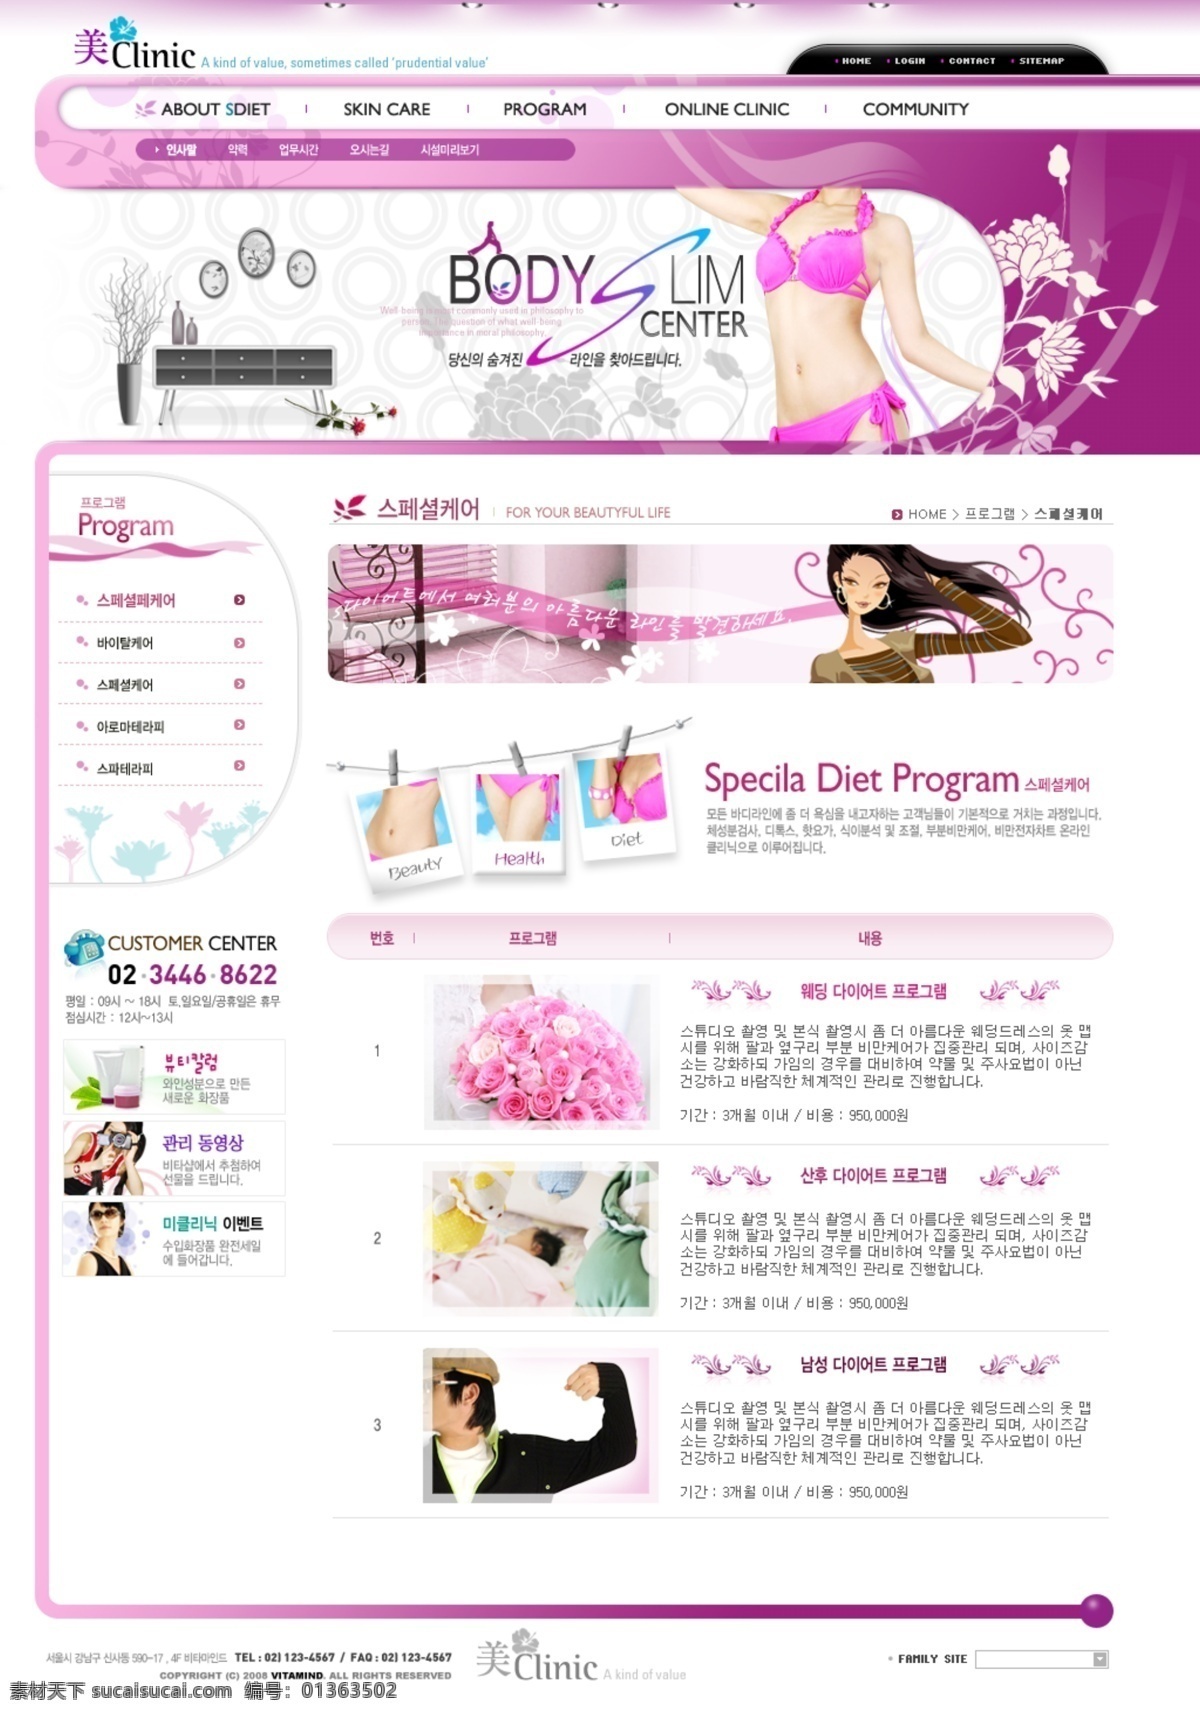 韩国模板 韩文网页 网页 网页模板 网页设计 网站 源文件 粉色 韩文 版面 娱乐网页设计 潮流 版面设计 时尚 网页素材